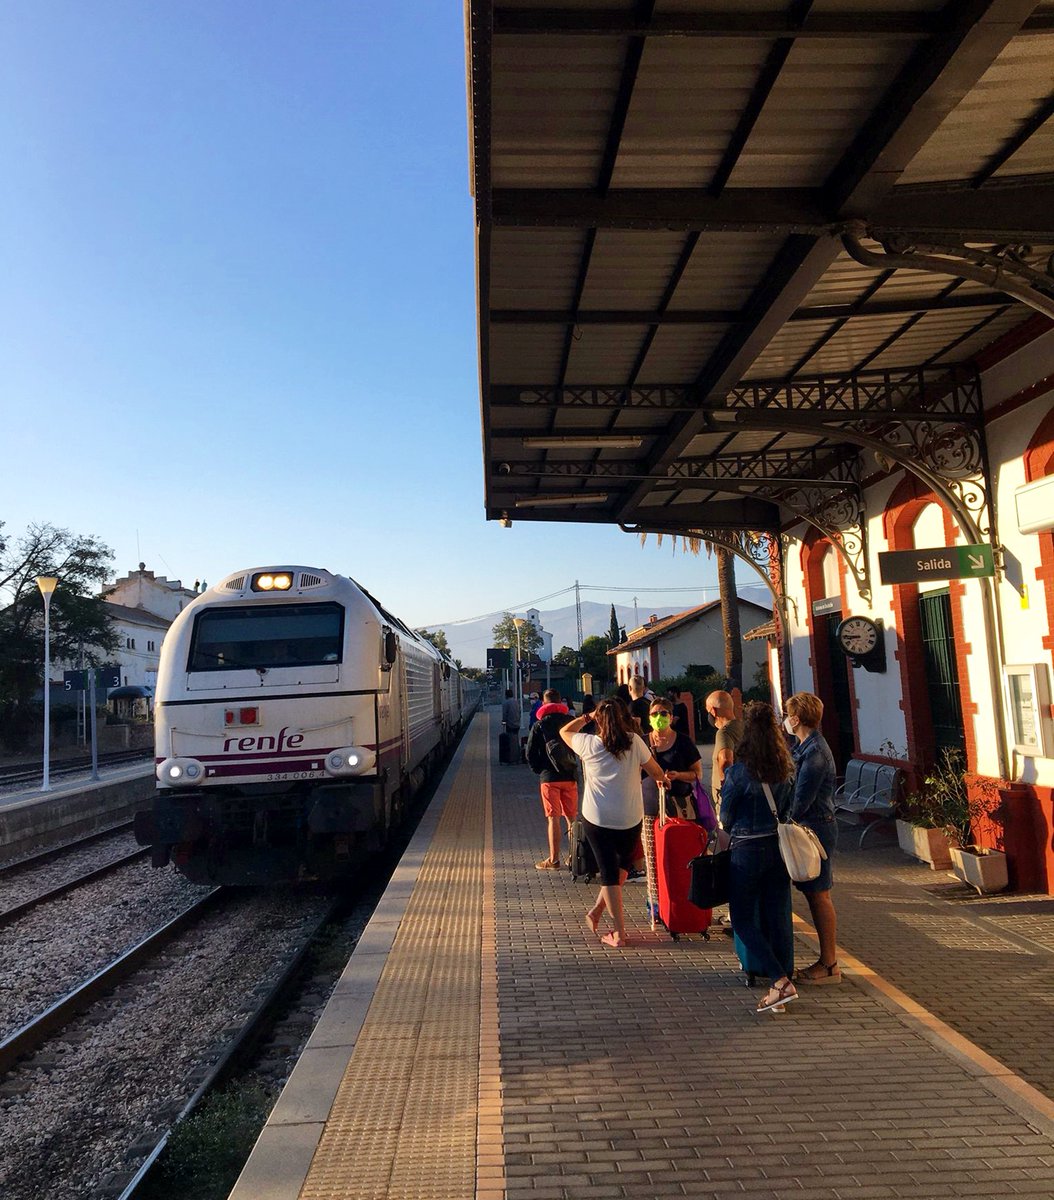 Los medios hablan de 'peticiones' para la #investidura
Los colectivos ferroviarios anhelamos que haya diputados/as que pidan #TREN para los territorios
#SemanaDeLaMovilidad
#EstudioInformativo YA,REAPERTURA YA
31/12/1984-19/9/2023 #14139díassintren #Guadix #Baza #Almanzora #Lorca